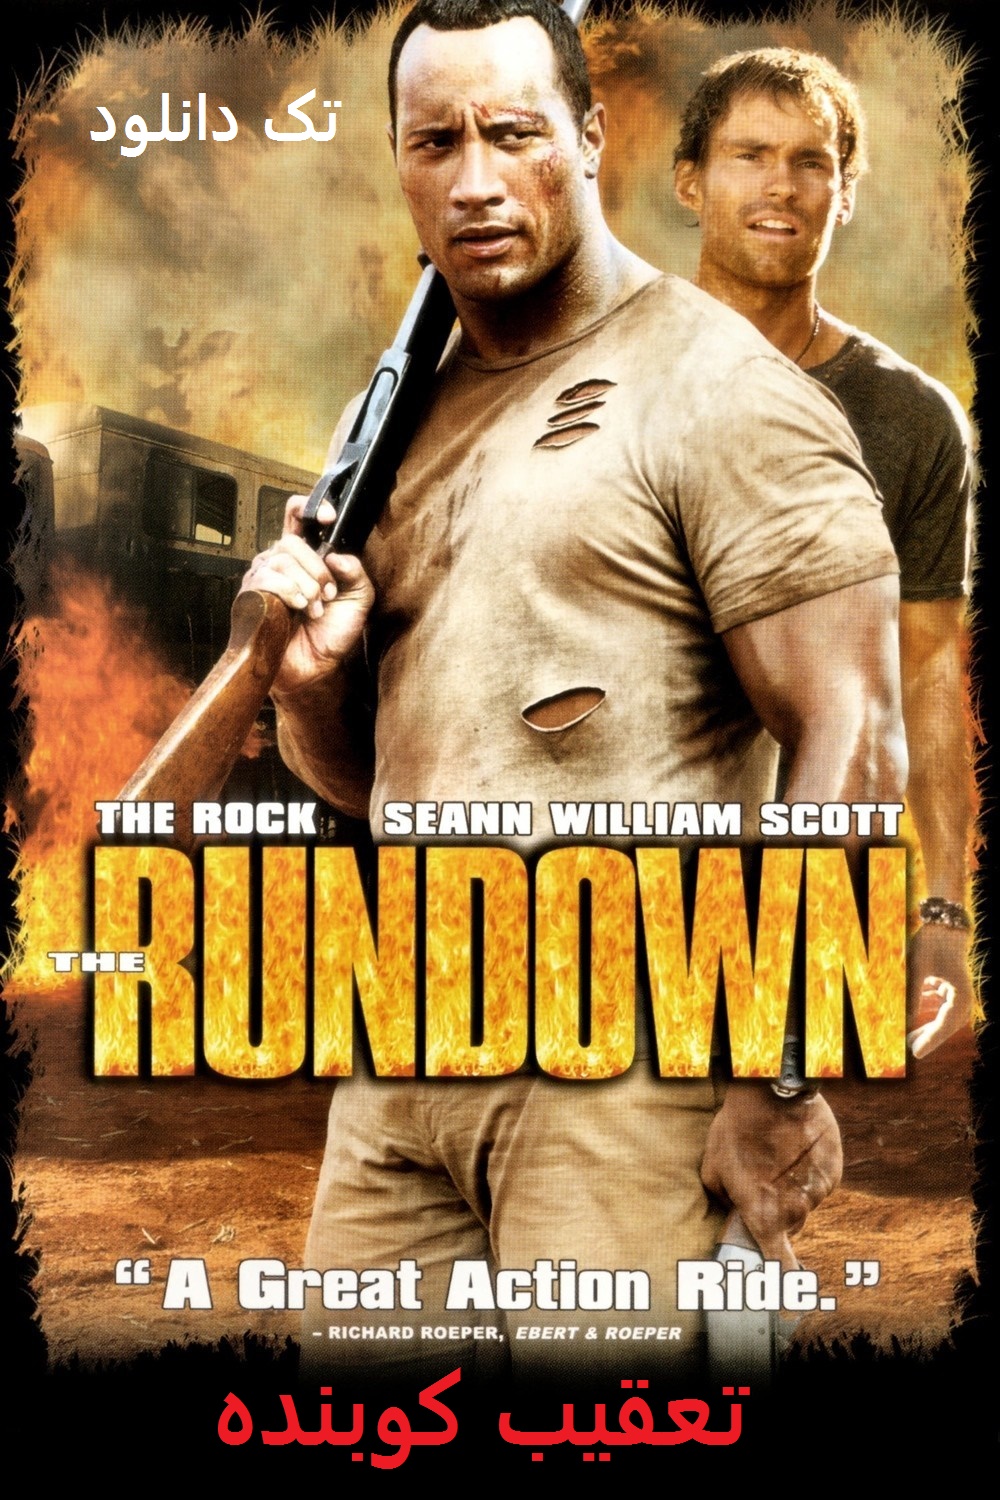 دانلود فیلم تعقیب کوبنده The Rundown 2003 با دوبله فارسی